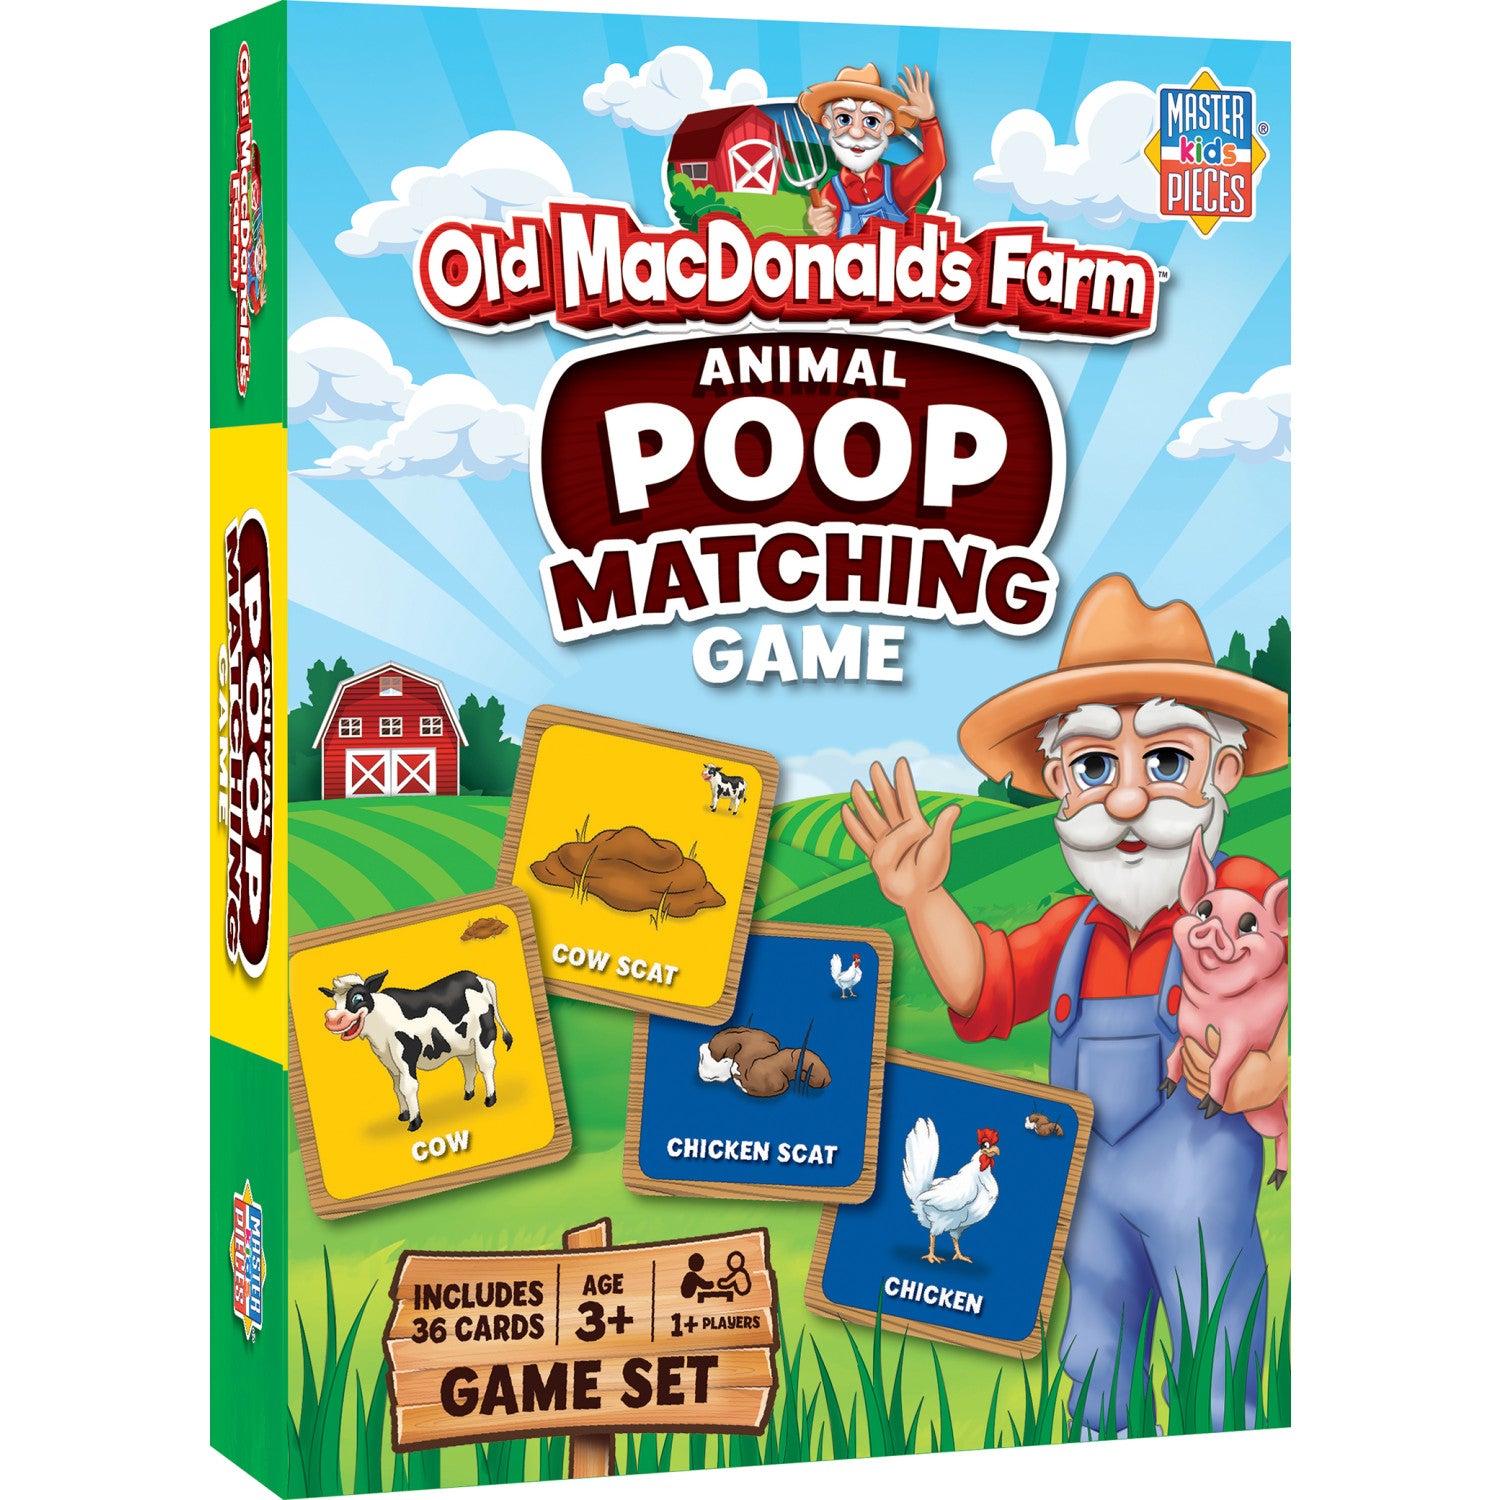 Old MacDonald's Farm Animal Poop Matching Game